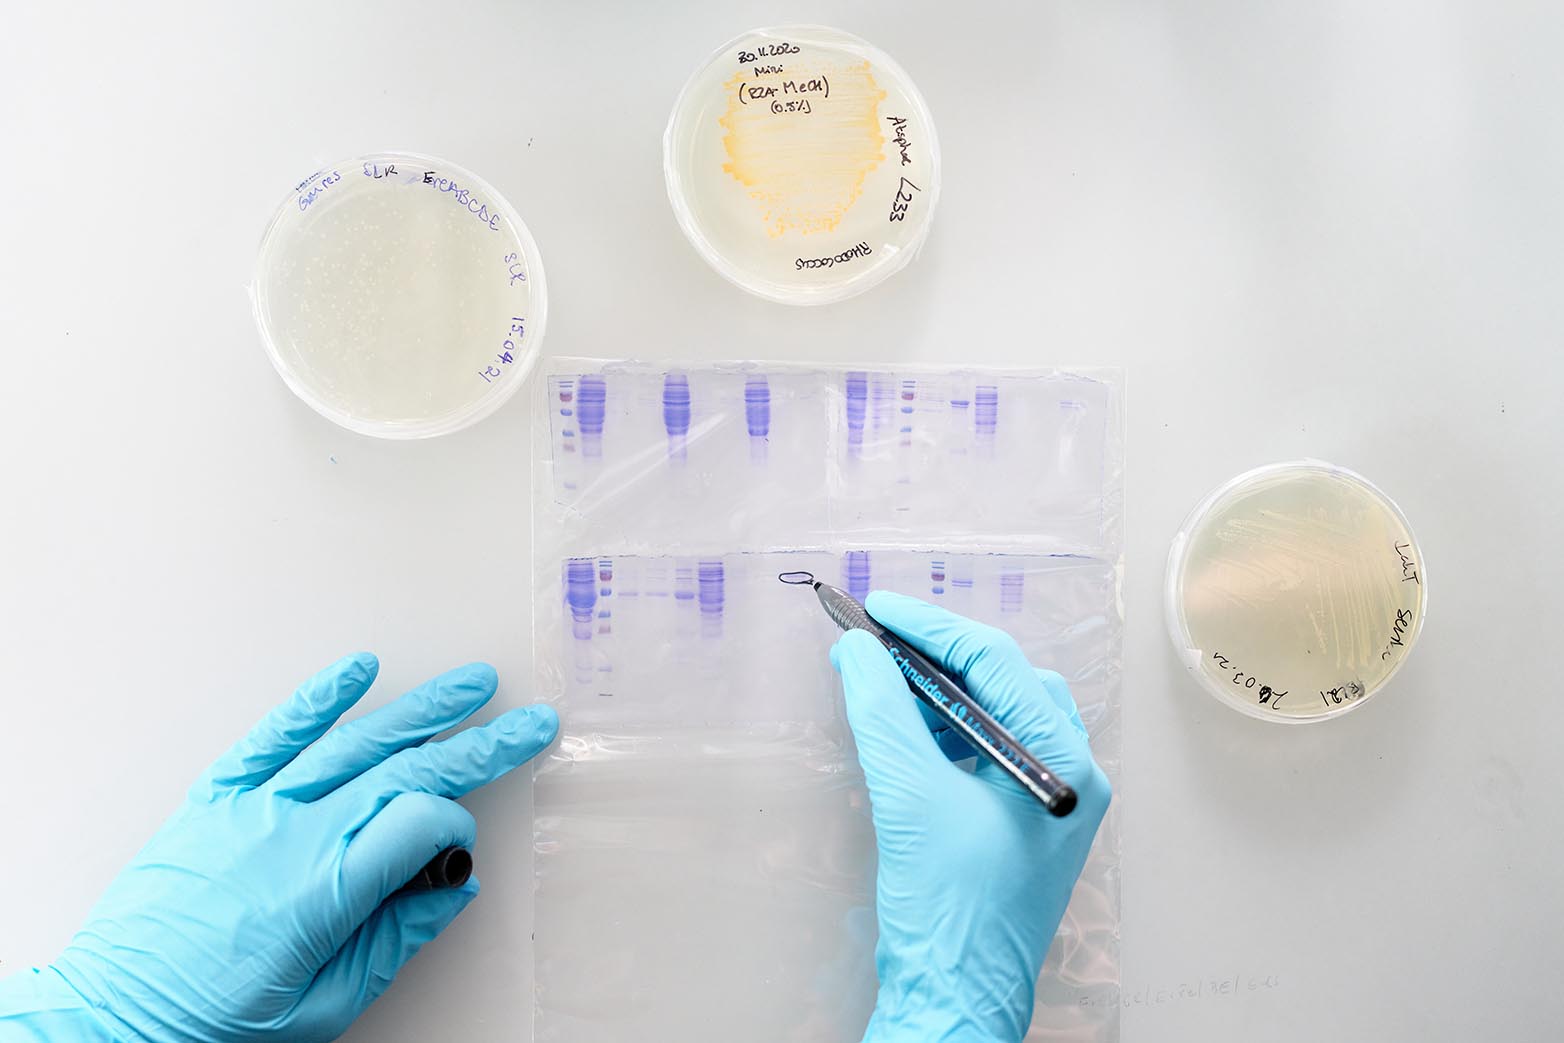 Auswertung von Protein-Gels aus Petrischalen